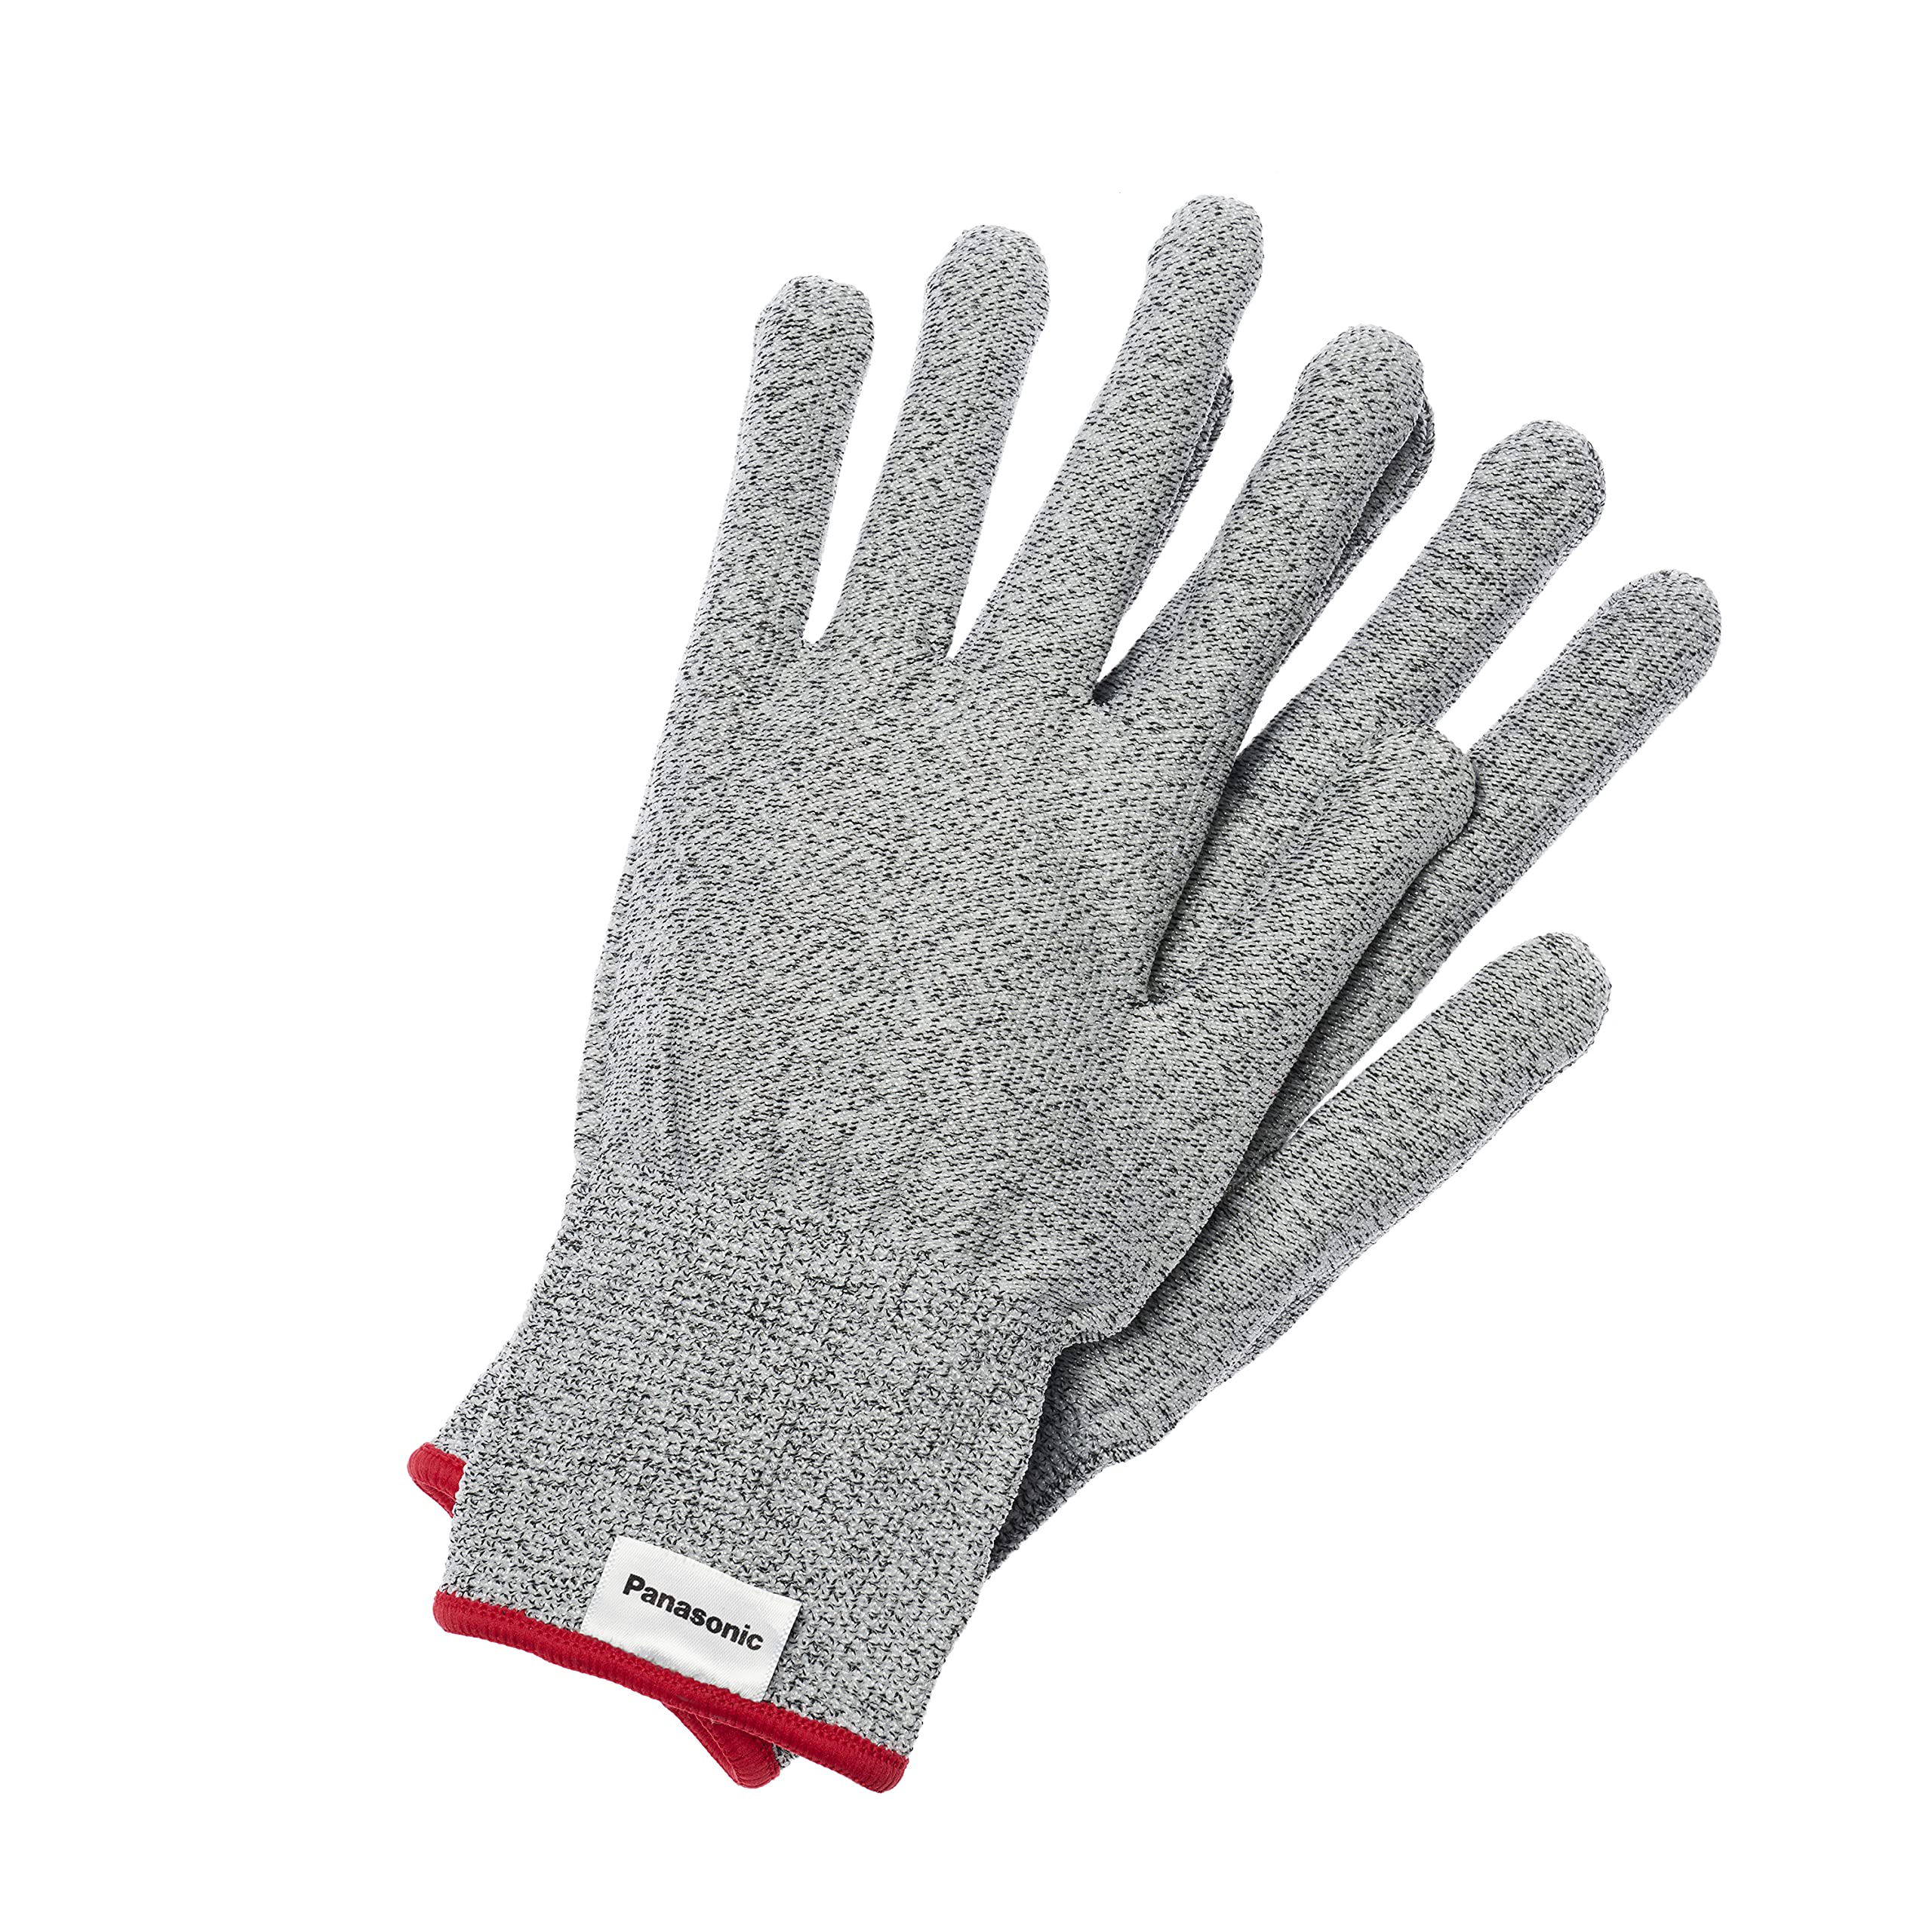 パナソニック タングステン耐切創手袋 Mサイズ 白熱電球のフィラメント技術から生まれた手袋 高い耐切創性(レベルE) 洗濯OK WKTG0MH1AX